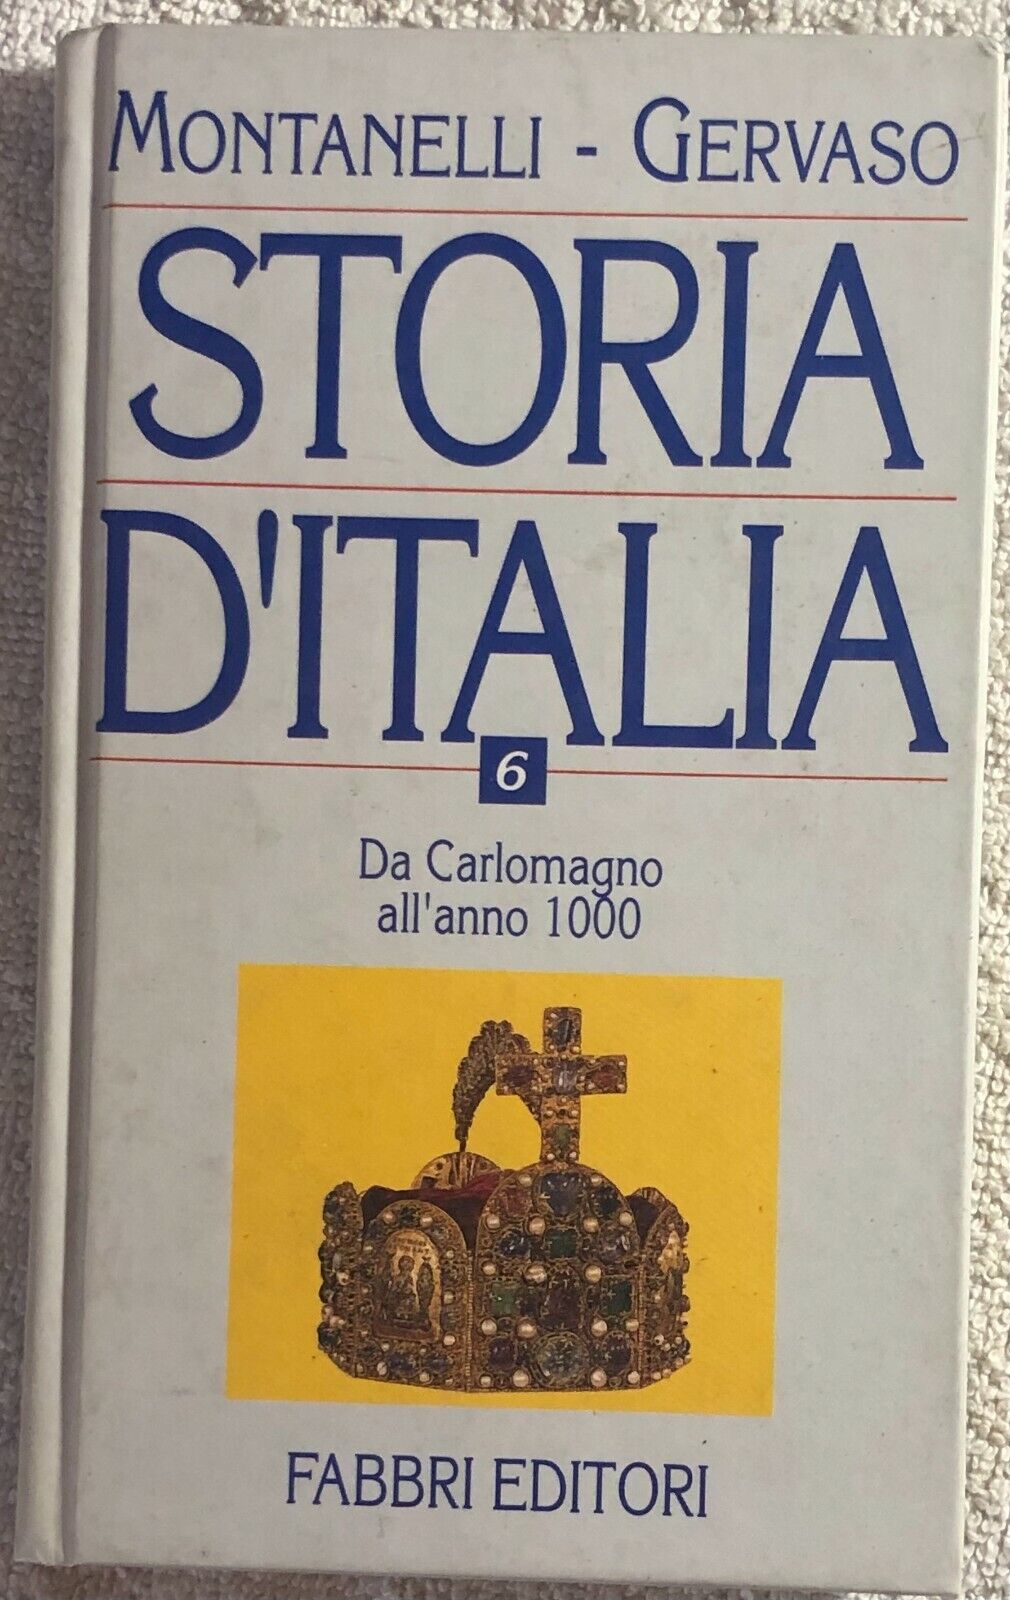 Storia d'Italia n. 6 - Da Carlomagno alL'anno 1000 di Montanelli-gervaso,  1999,